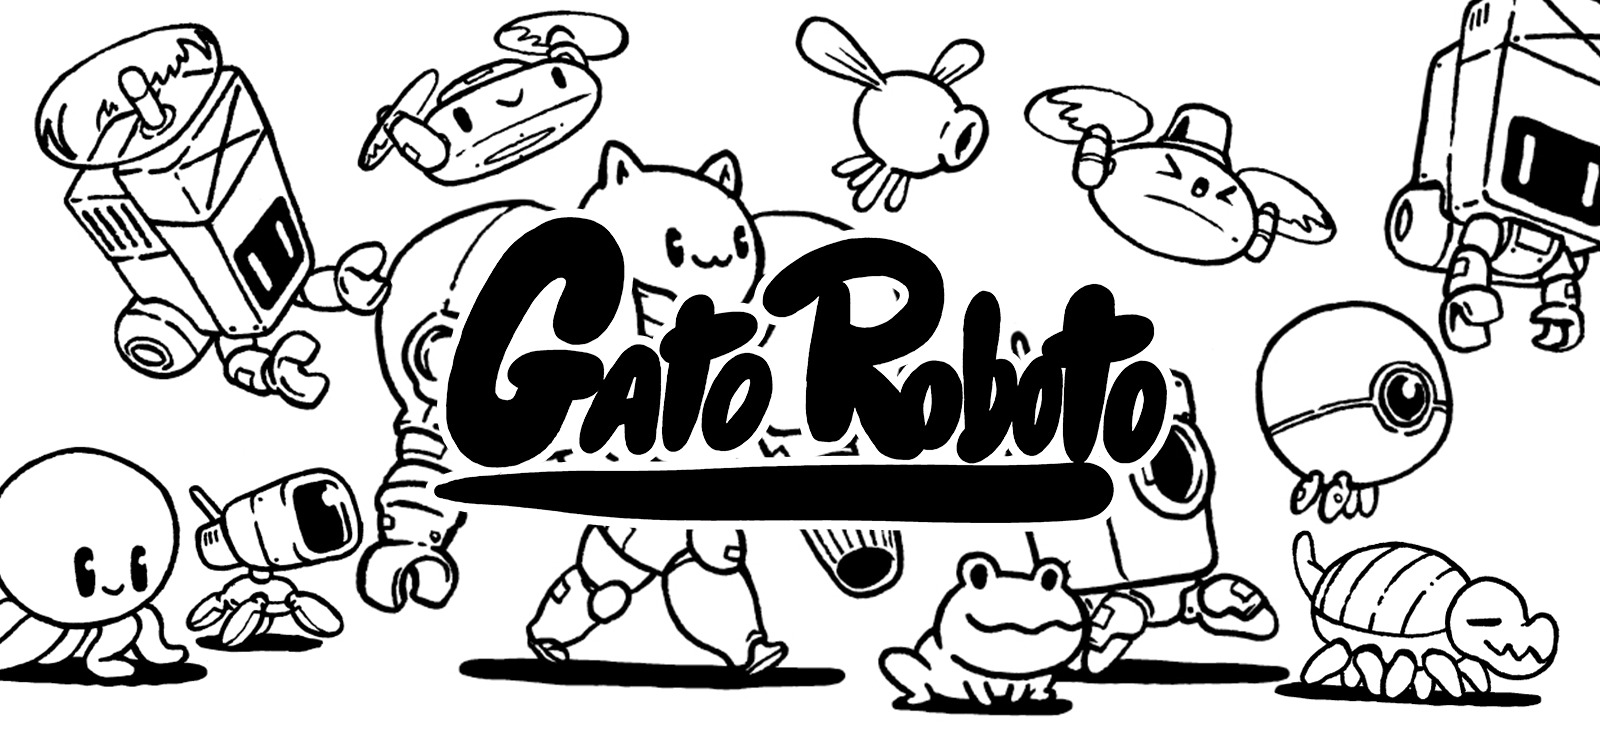 download gato roboto for free